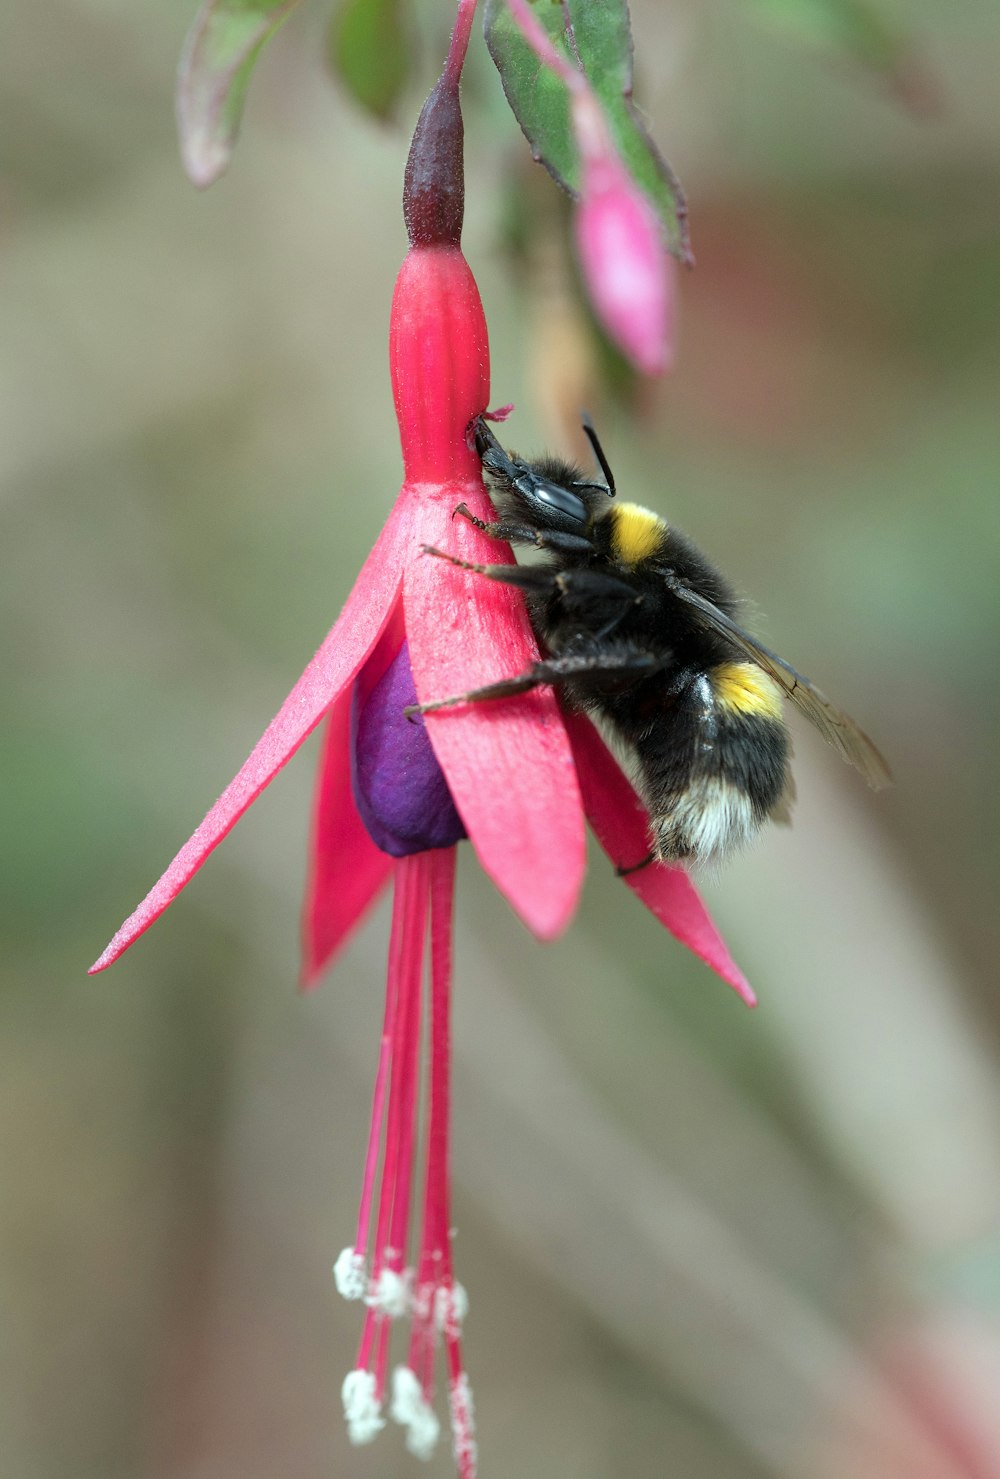 abeja negra y amarilla sobre flor rosada